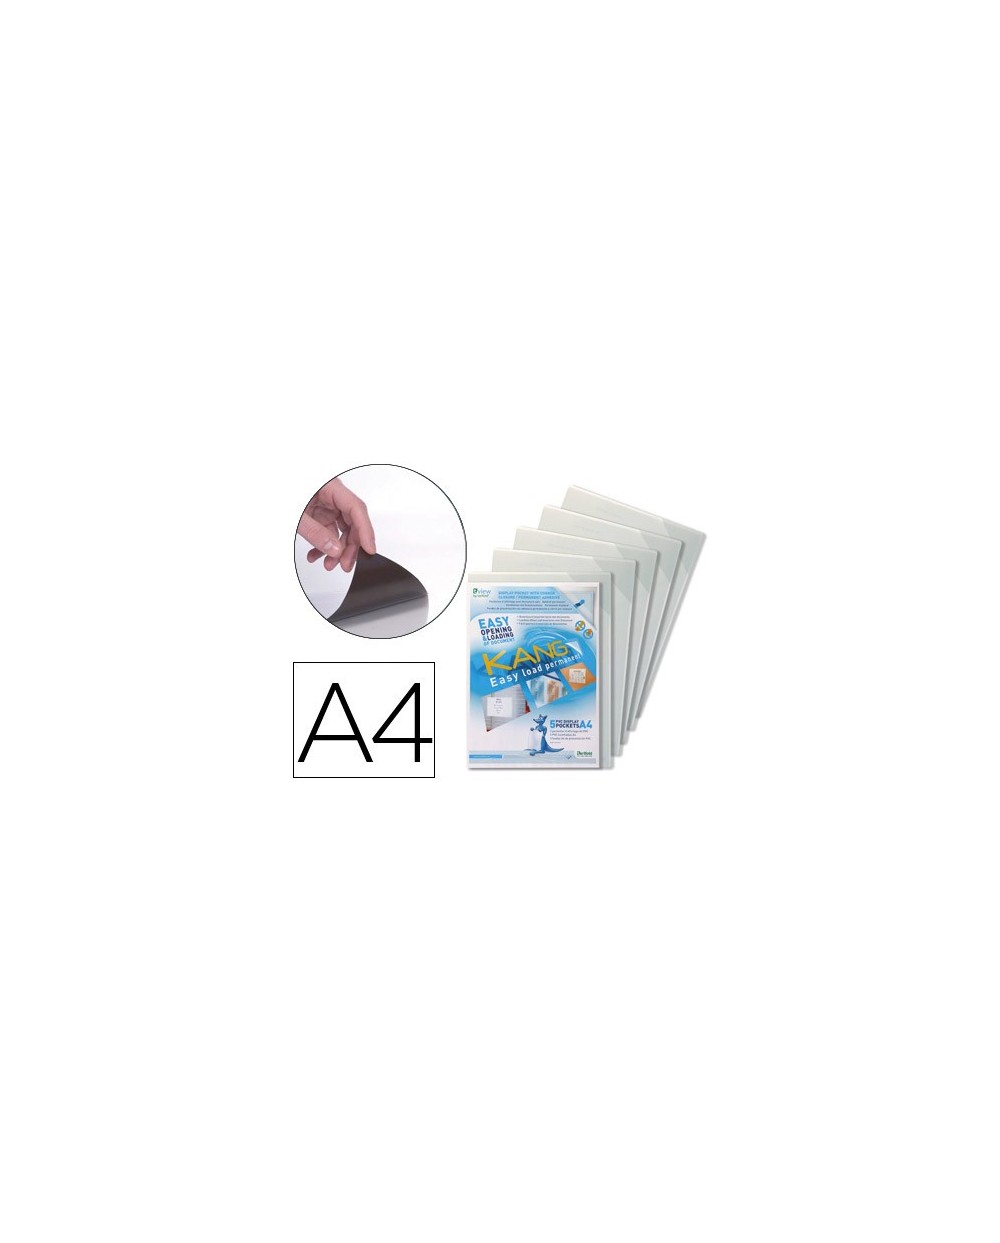 Funda de presentacion tarifold adhesiva permanente rigida y anti reflejo din a4 pack 5 unidades